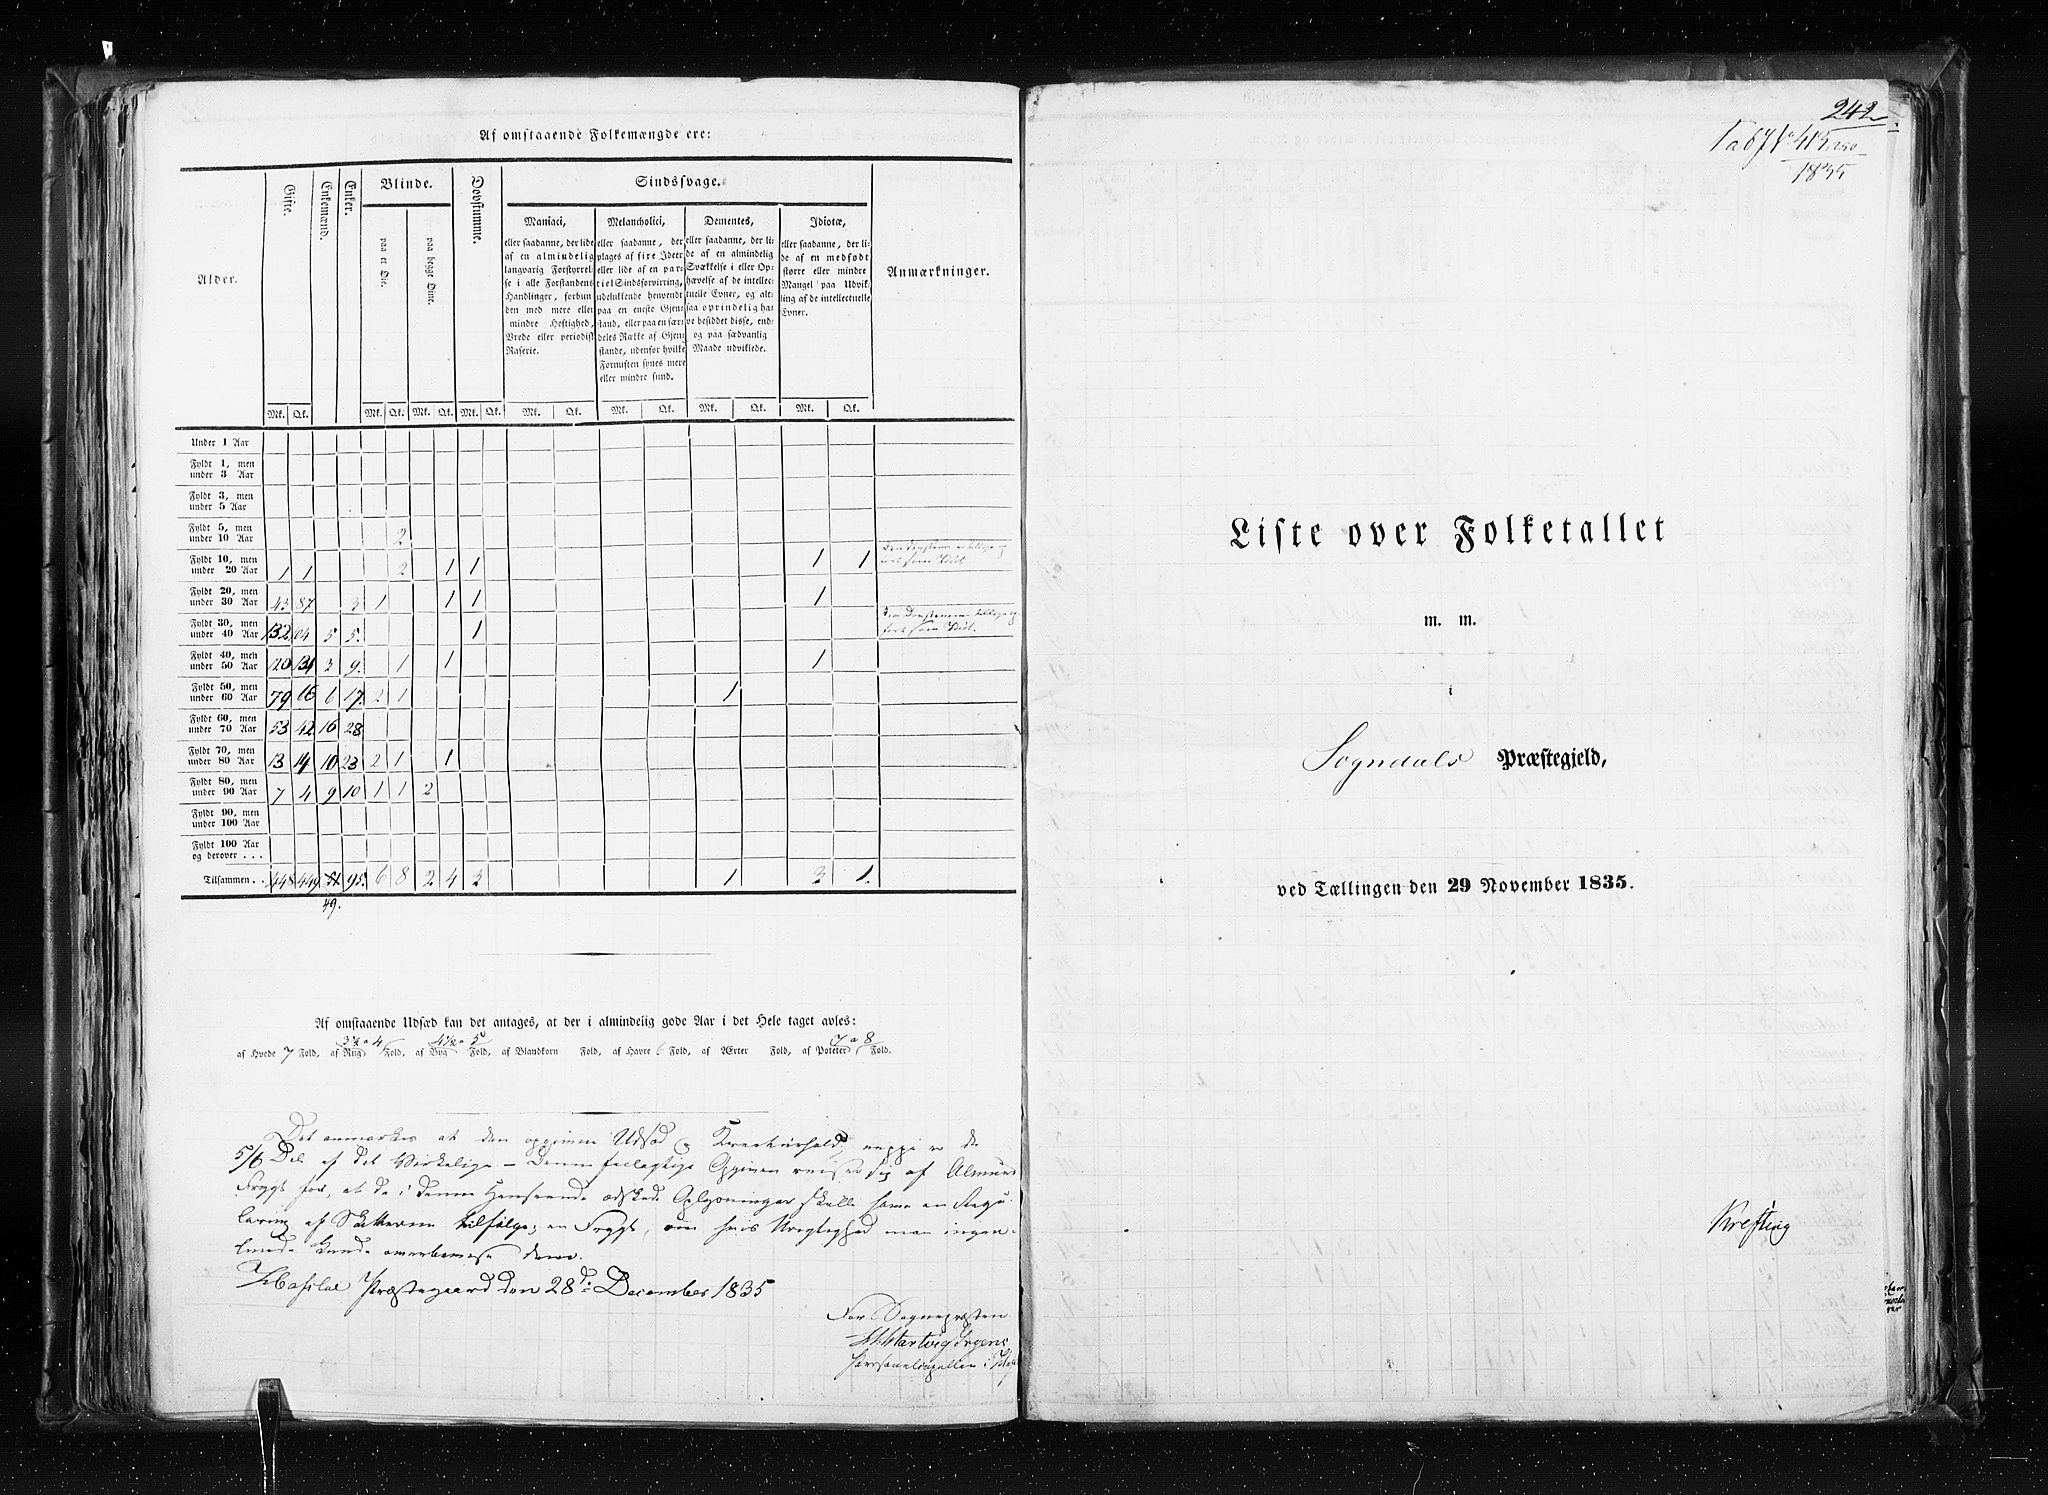 RA, Census 1835, vol. 7: Søndre Bergenhus amt og Nordre Bergenhus amt, 1835, p. 242